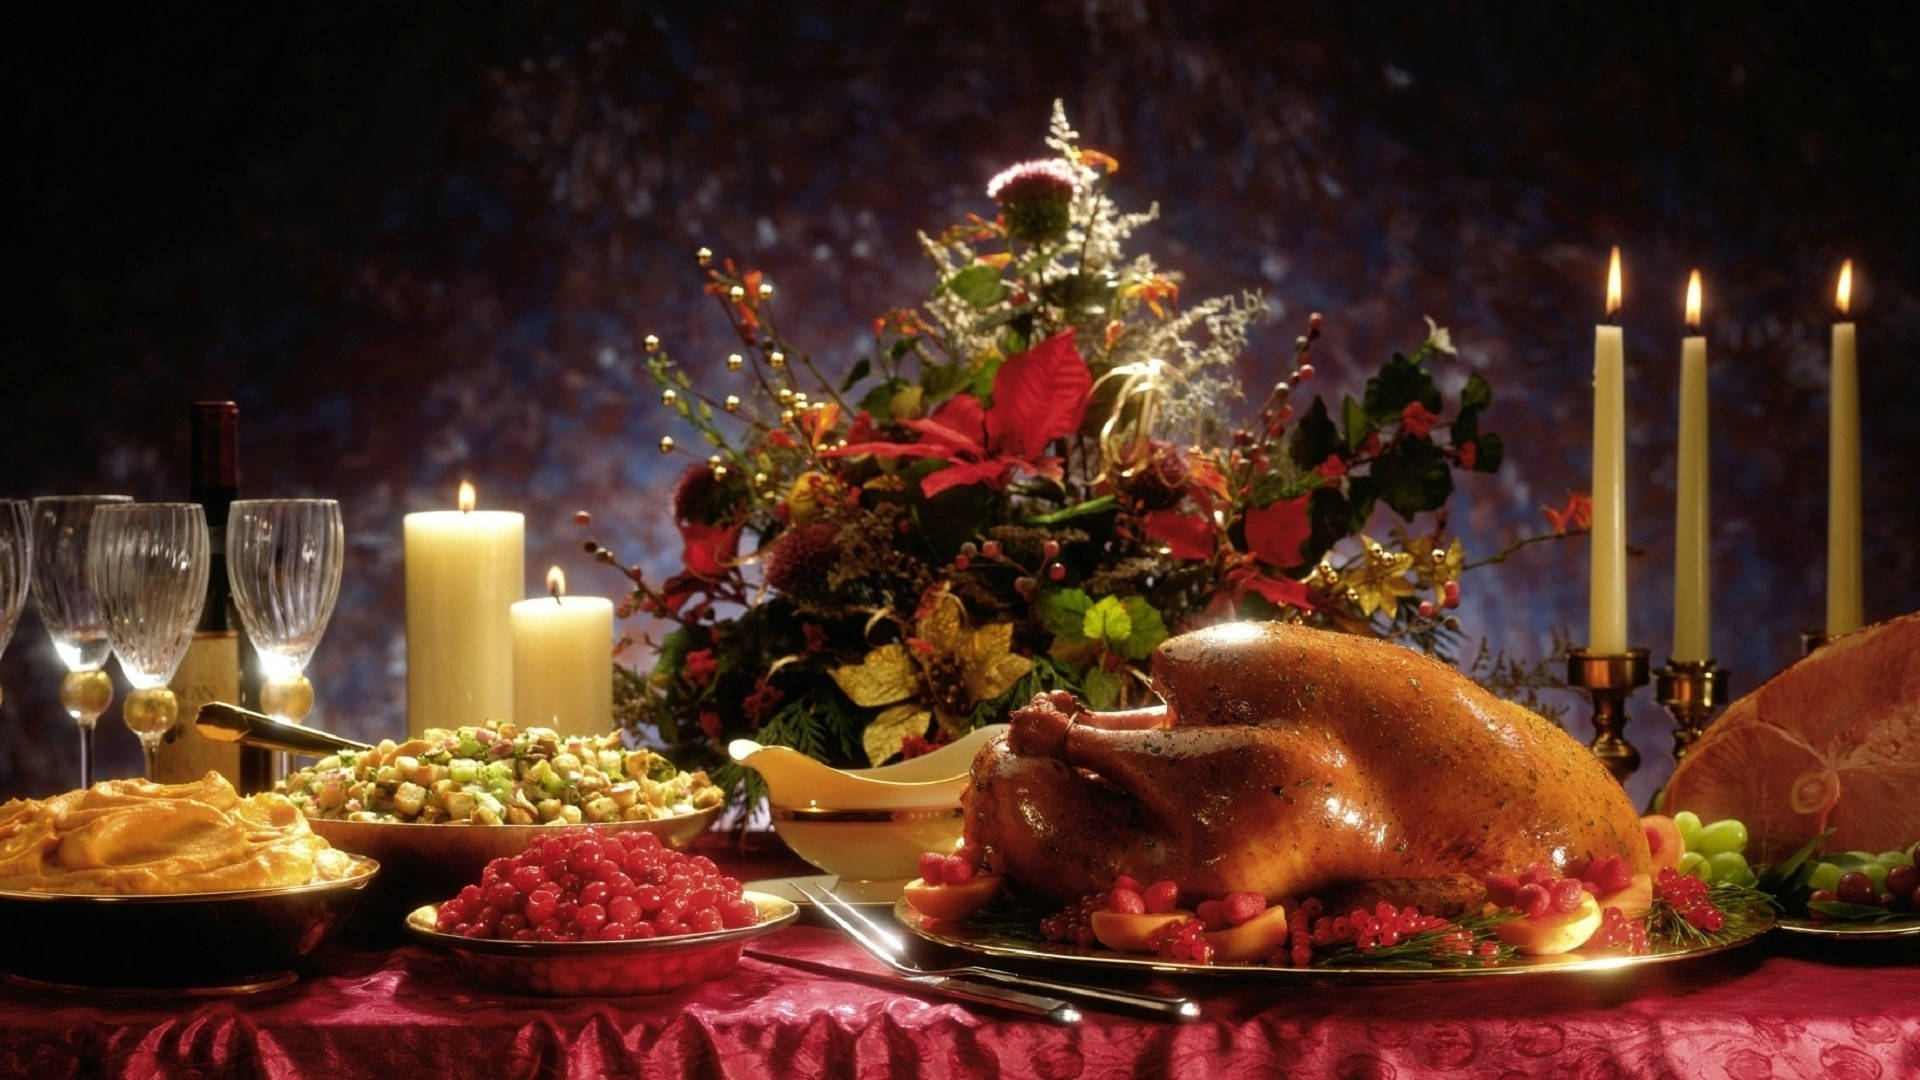 Fancythanksgiving Day Feast - Kära Thanksgiving Day-måltid Wallpaper